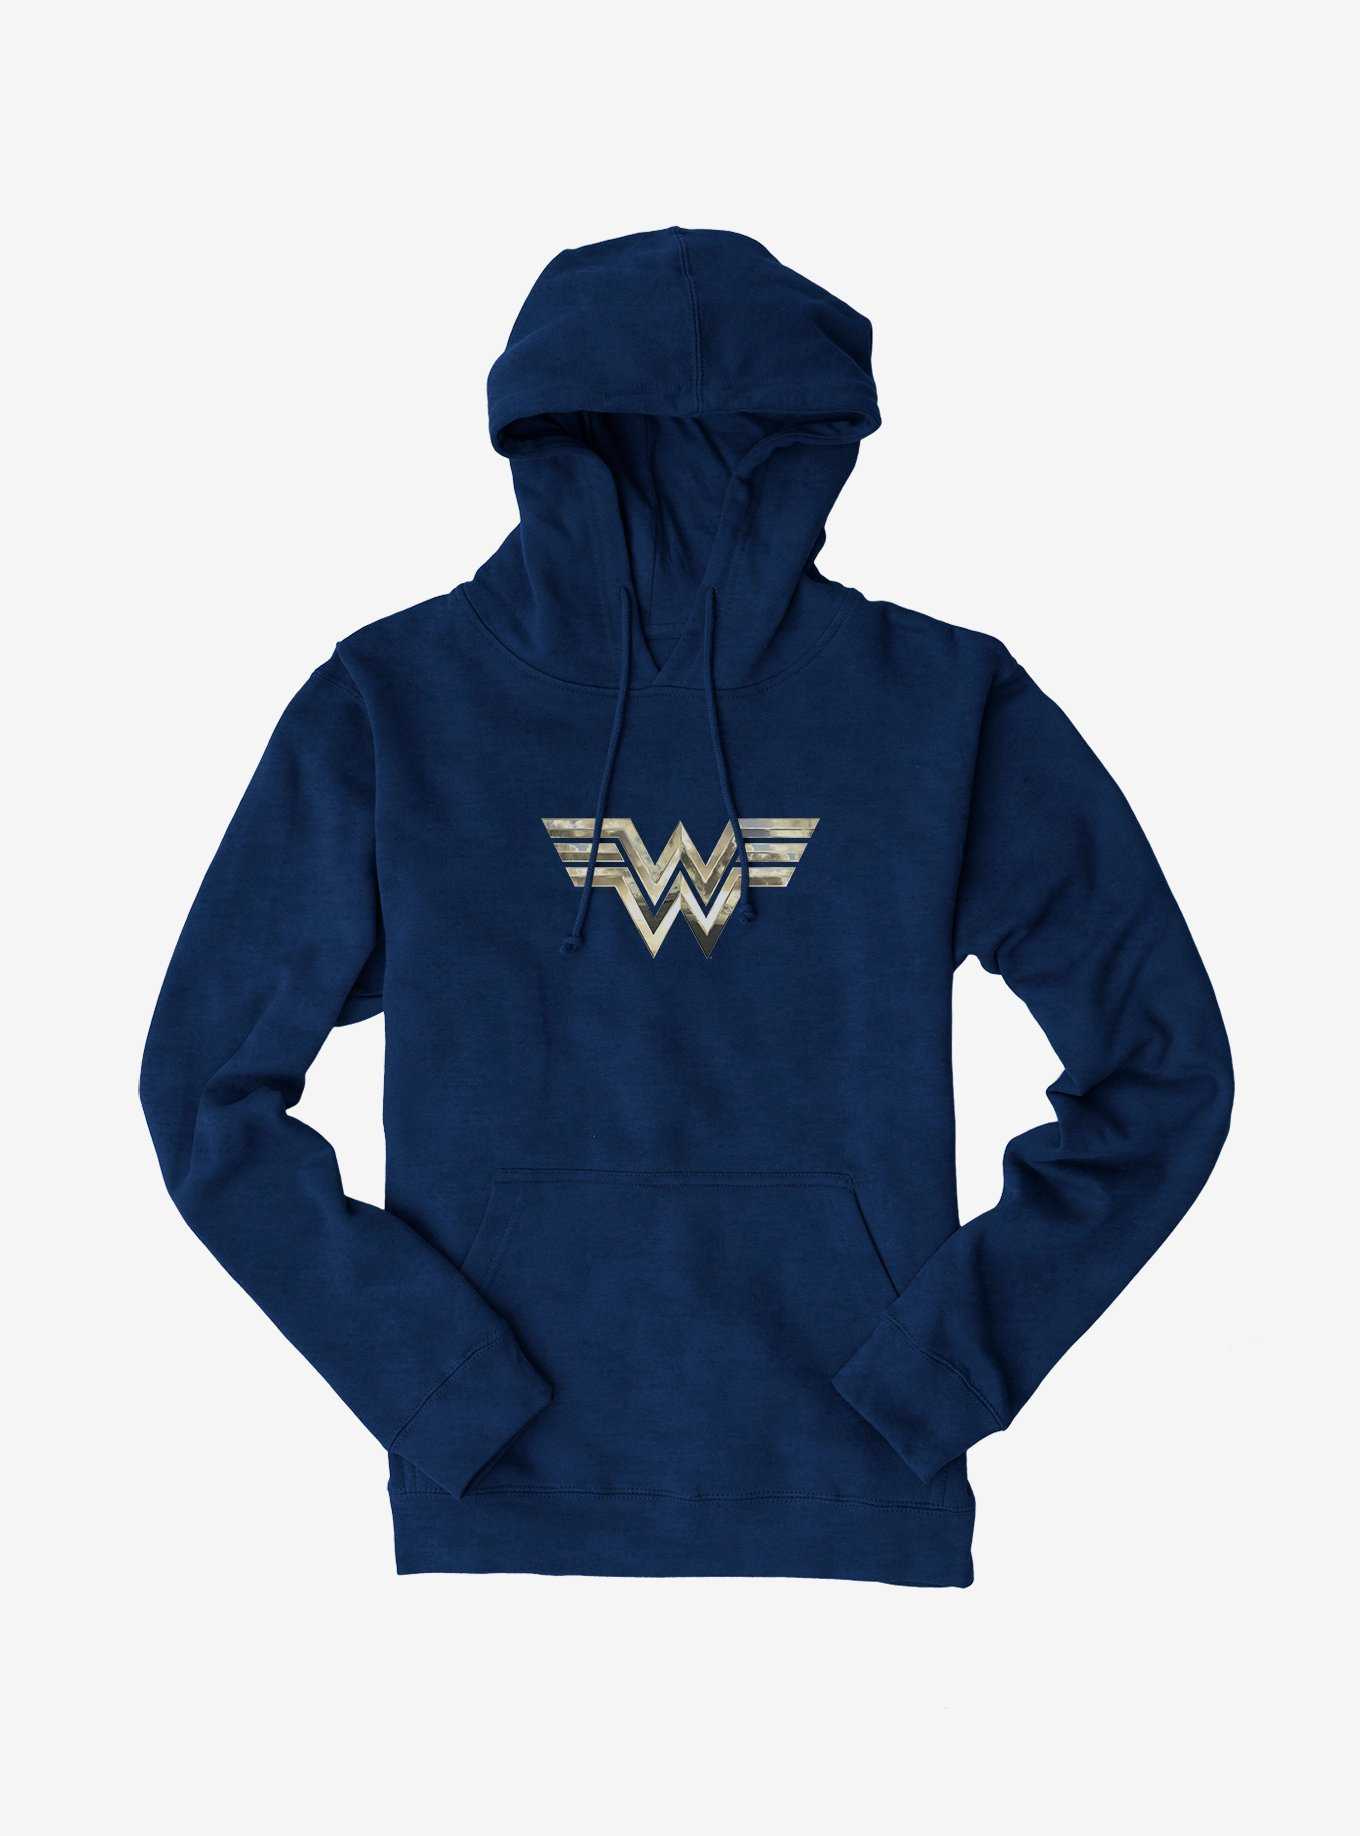 Wonder Woman Superhero Mens Blue Hooded Sweatshirt- Large